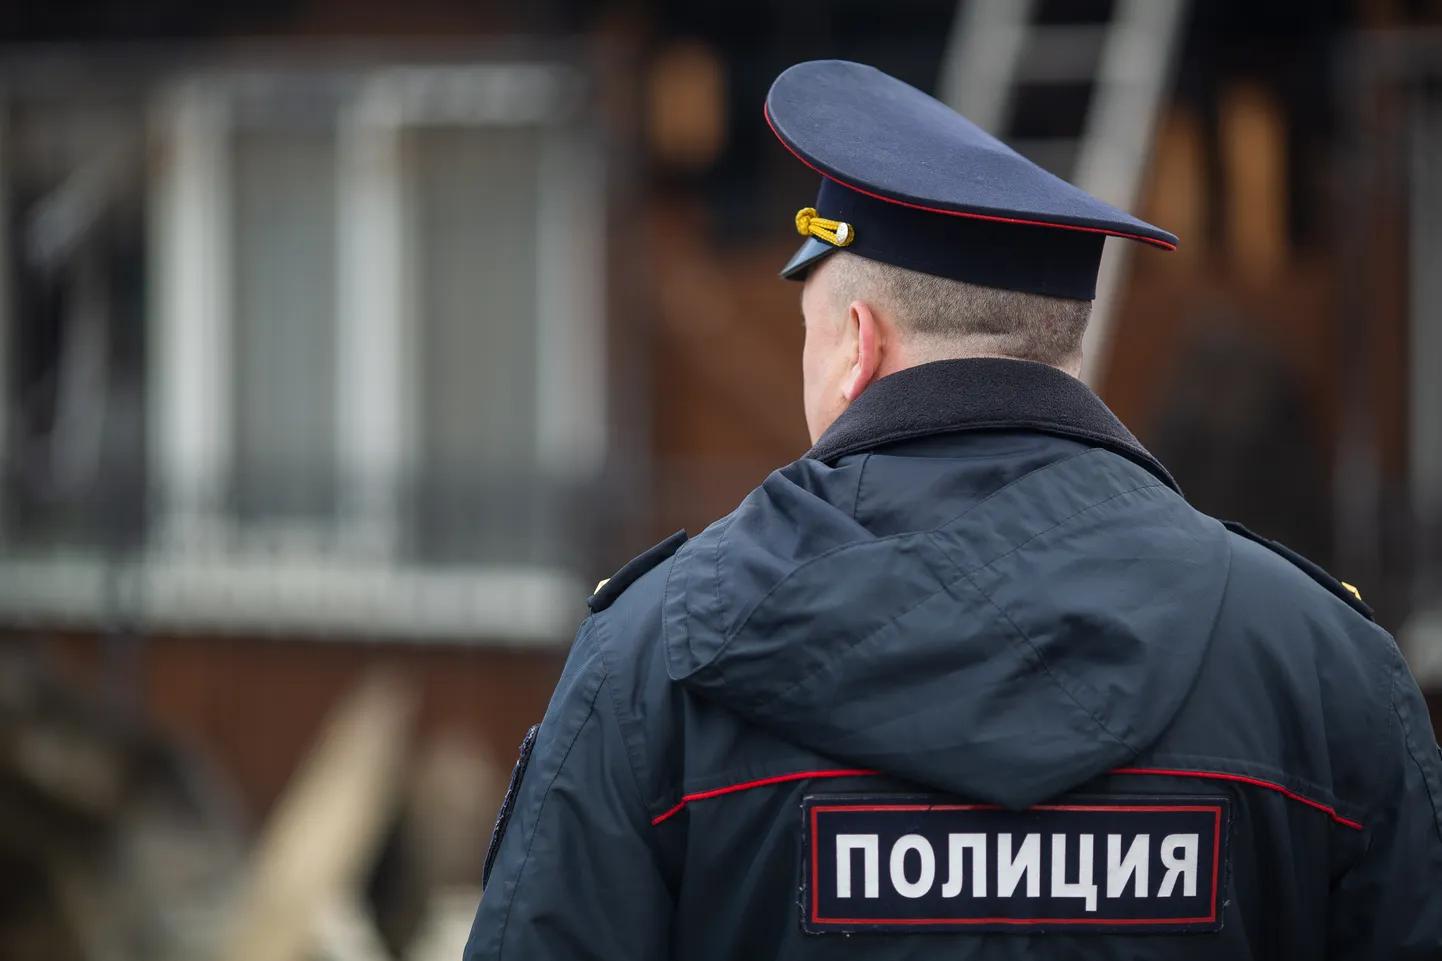 Российский полицейский. Иллюстративное фото.